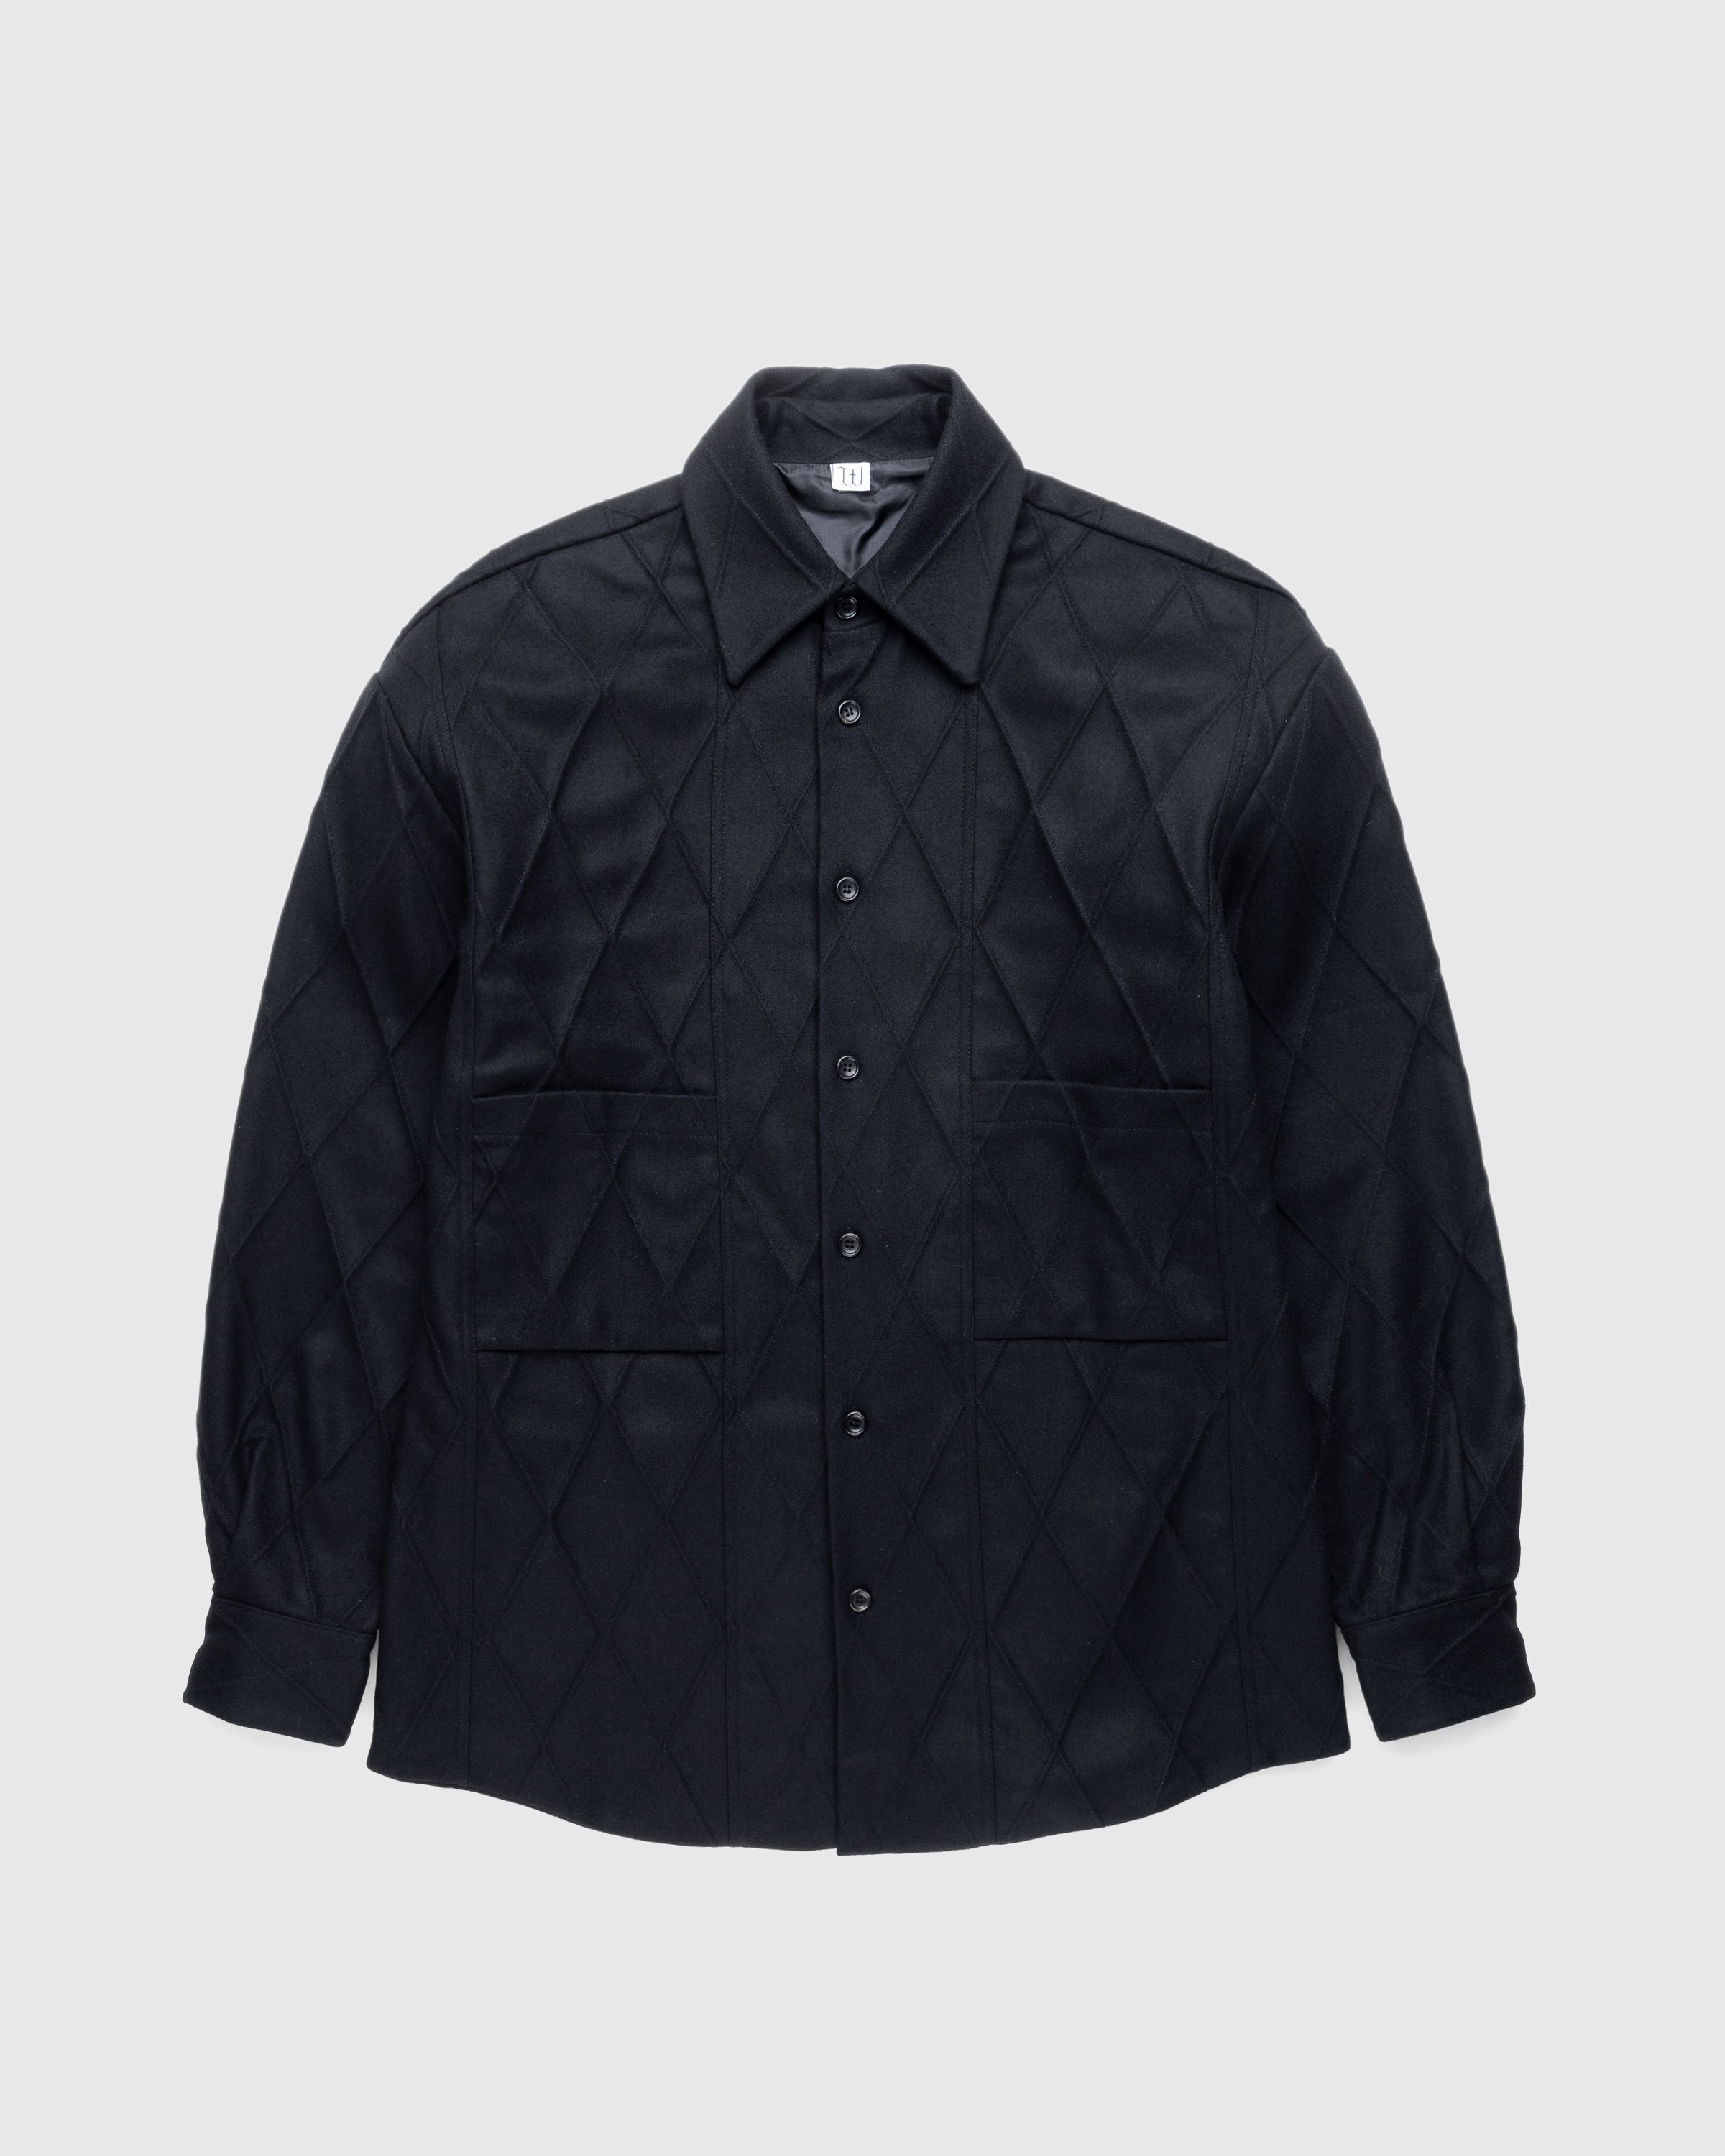 Winnie New York – Quilted Shirt Jacket Black | Highsnobiety Shop